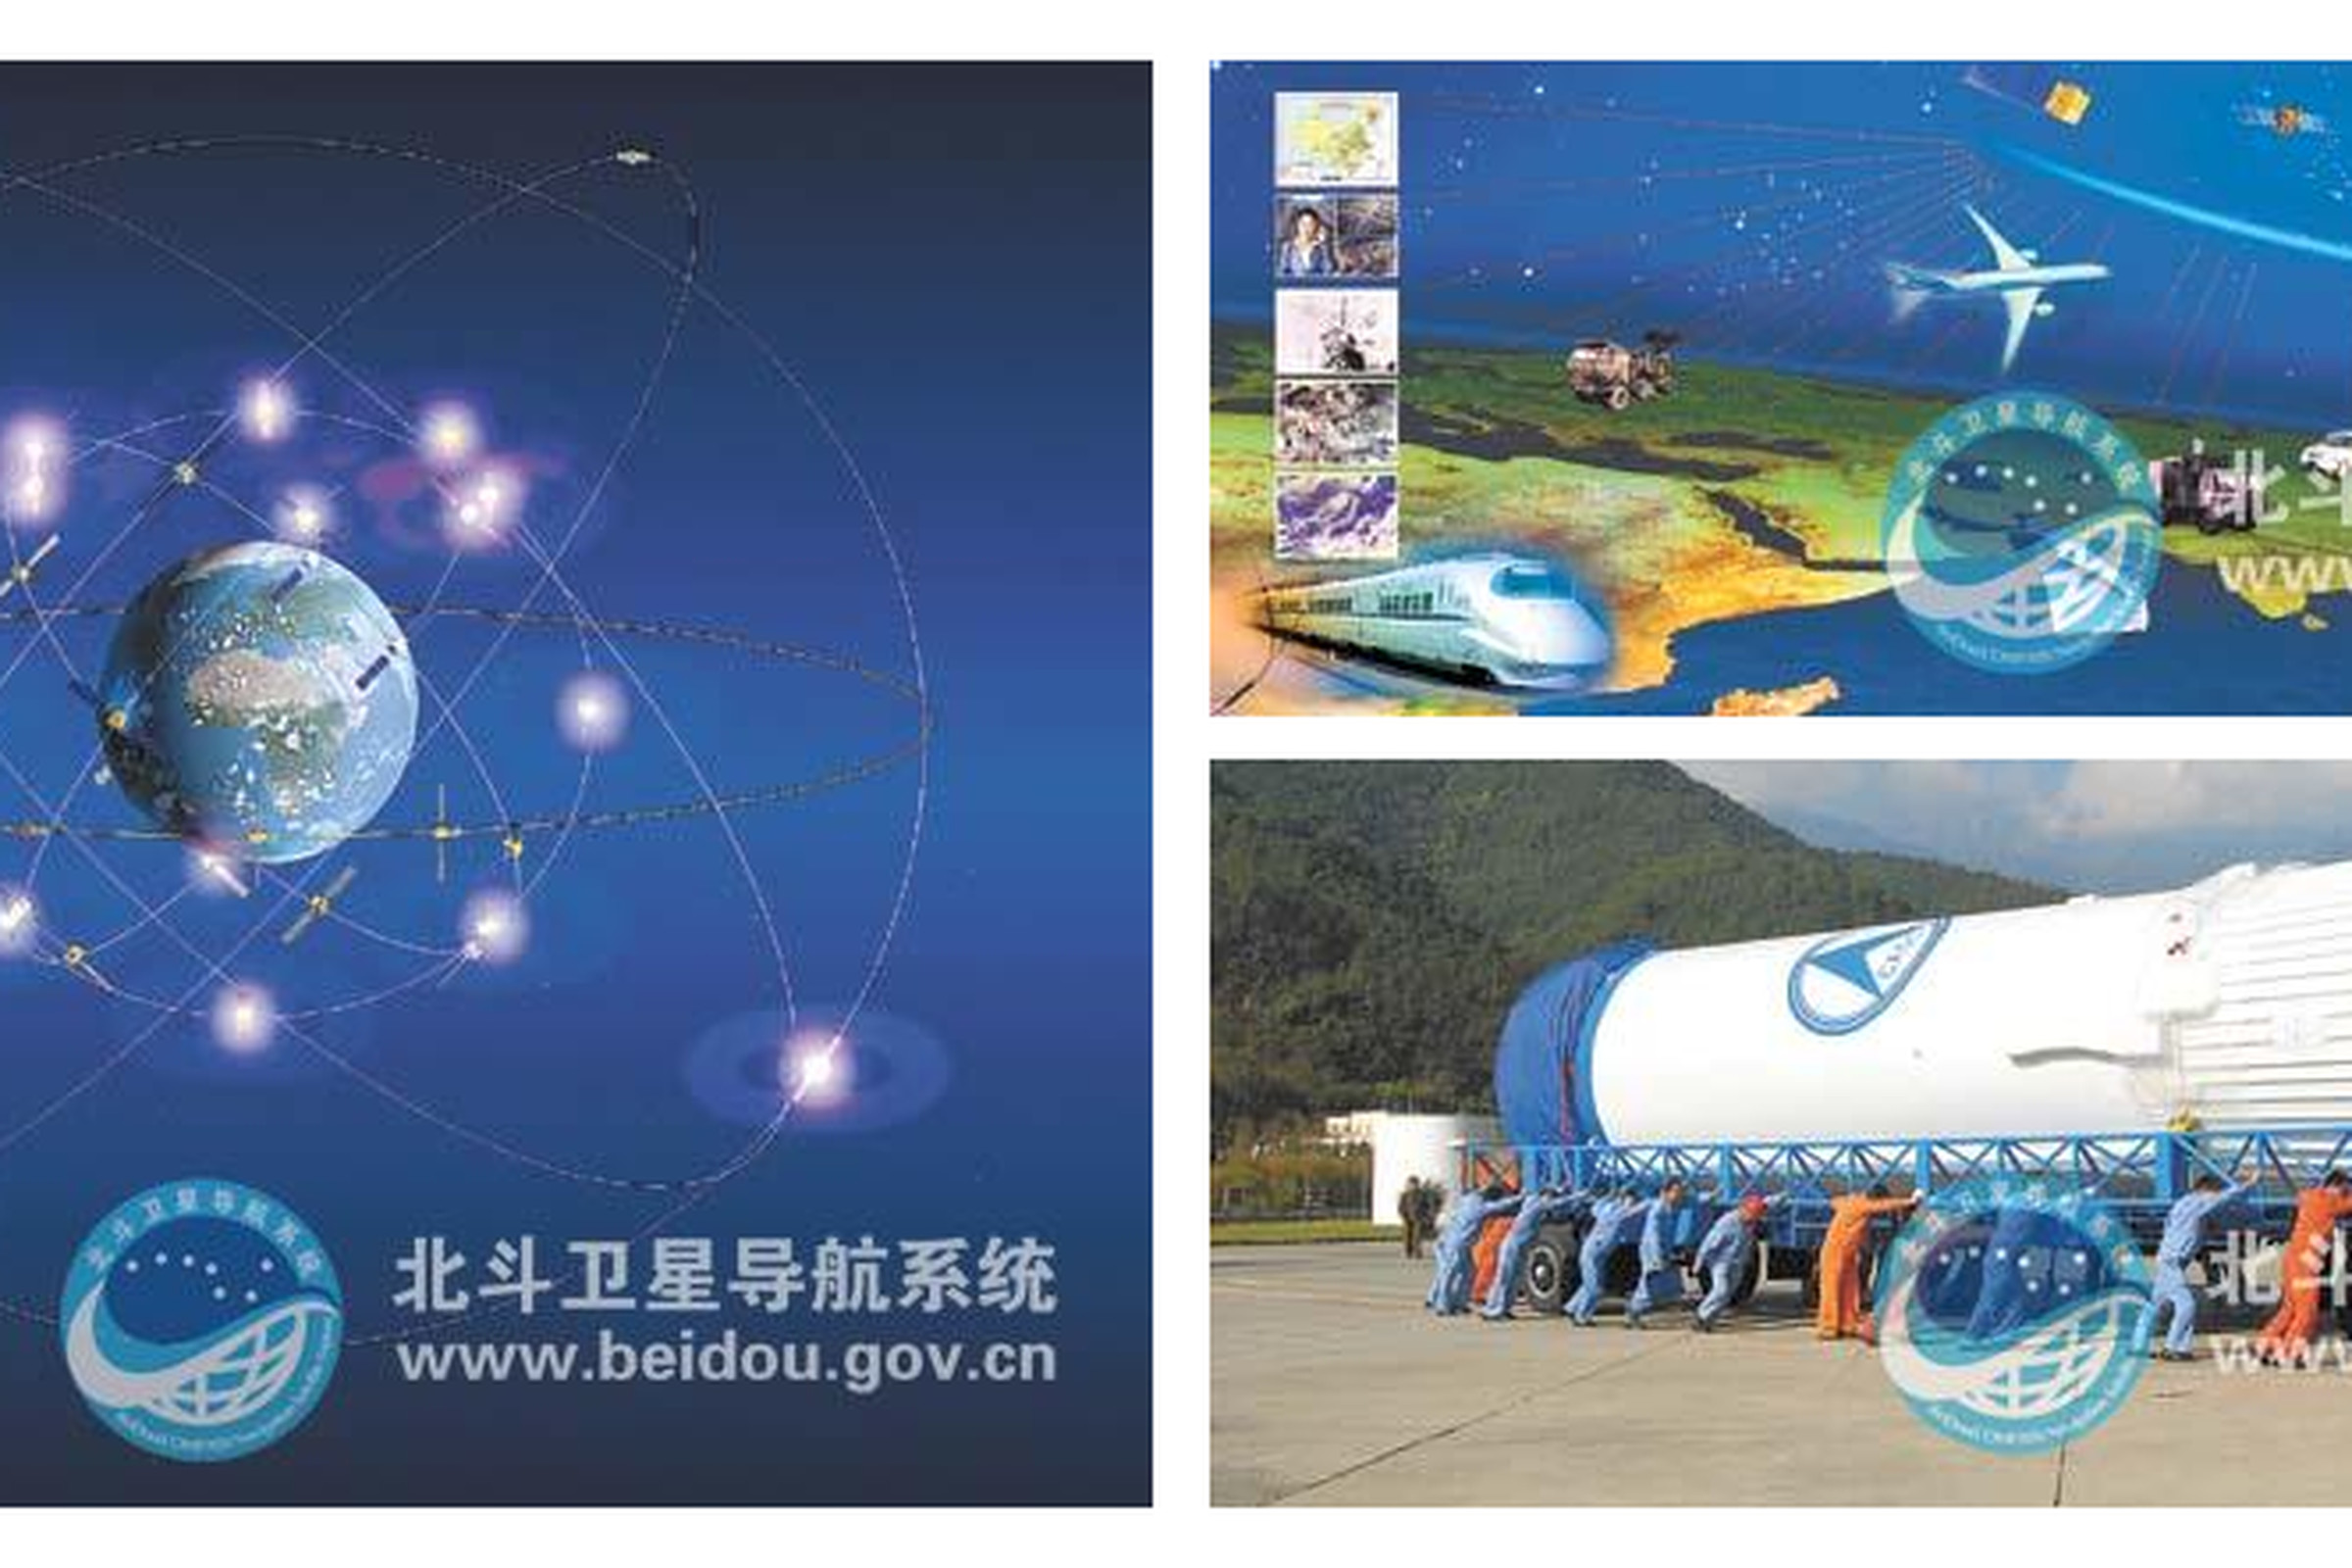 Beidou China Navigation System